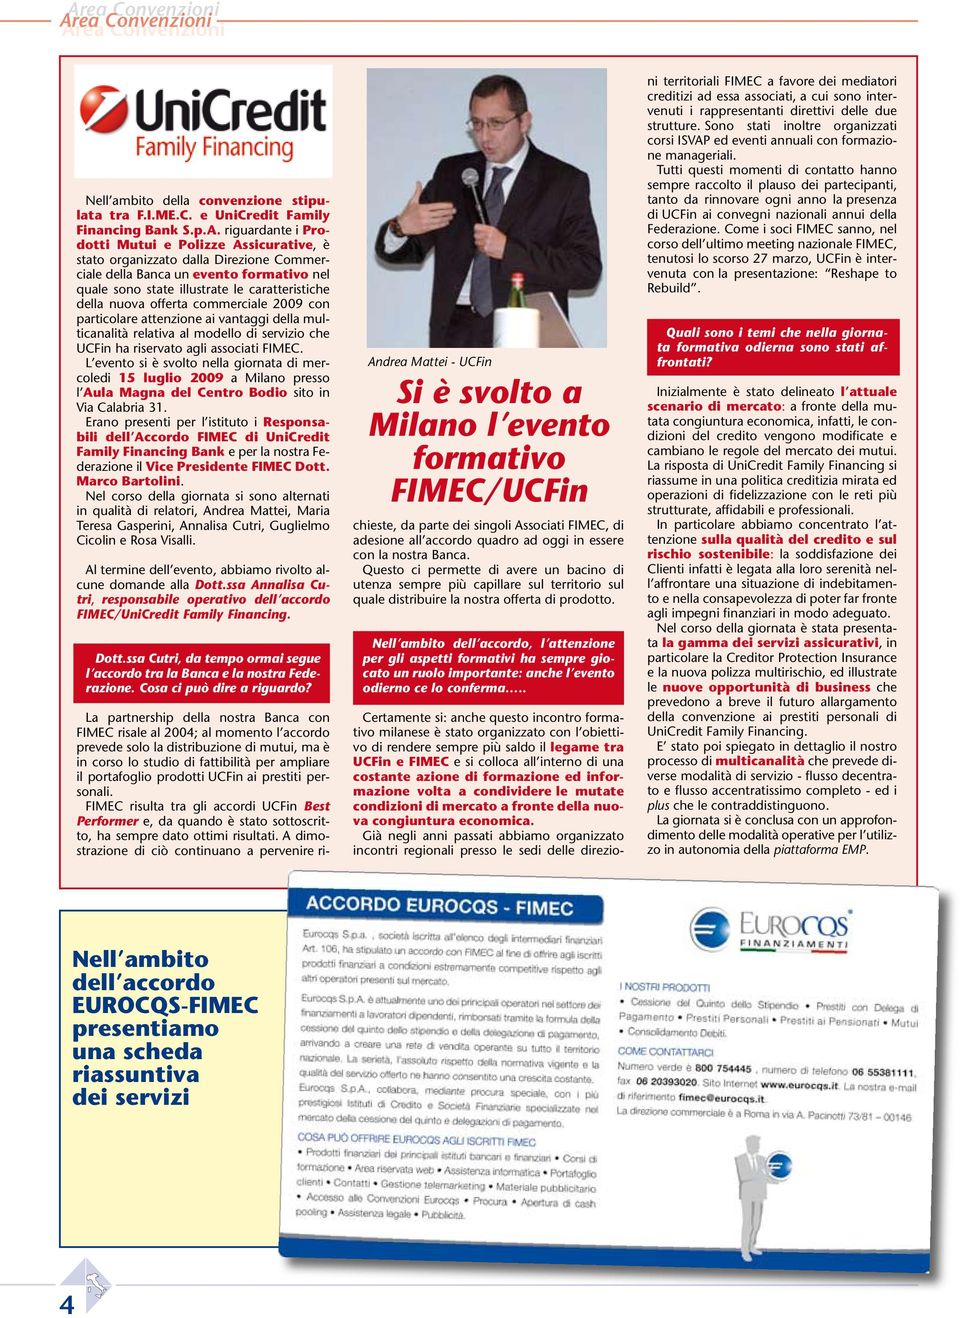 vantaggi della multicanalità relativa al modello di servizio che UCFin ha riservato agli associati FIMEC.